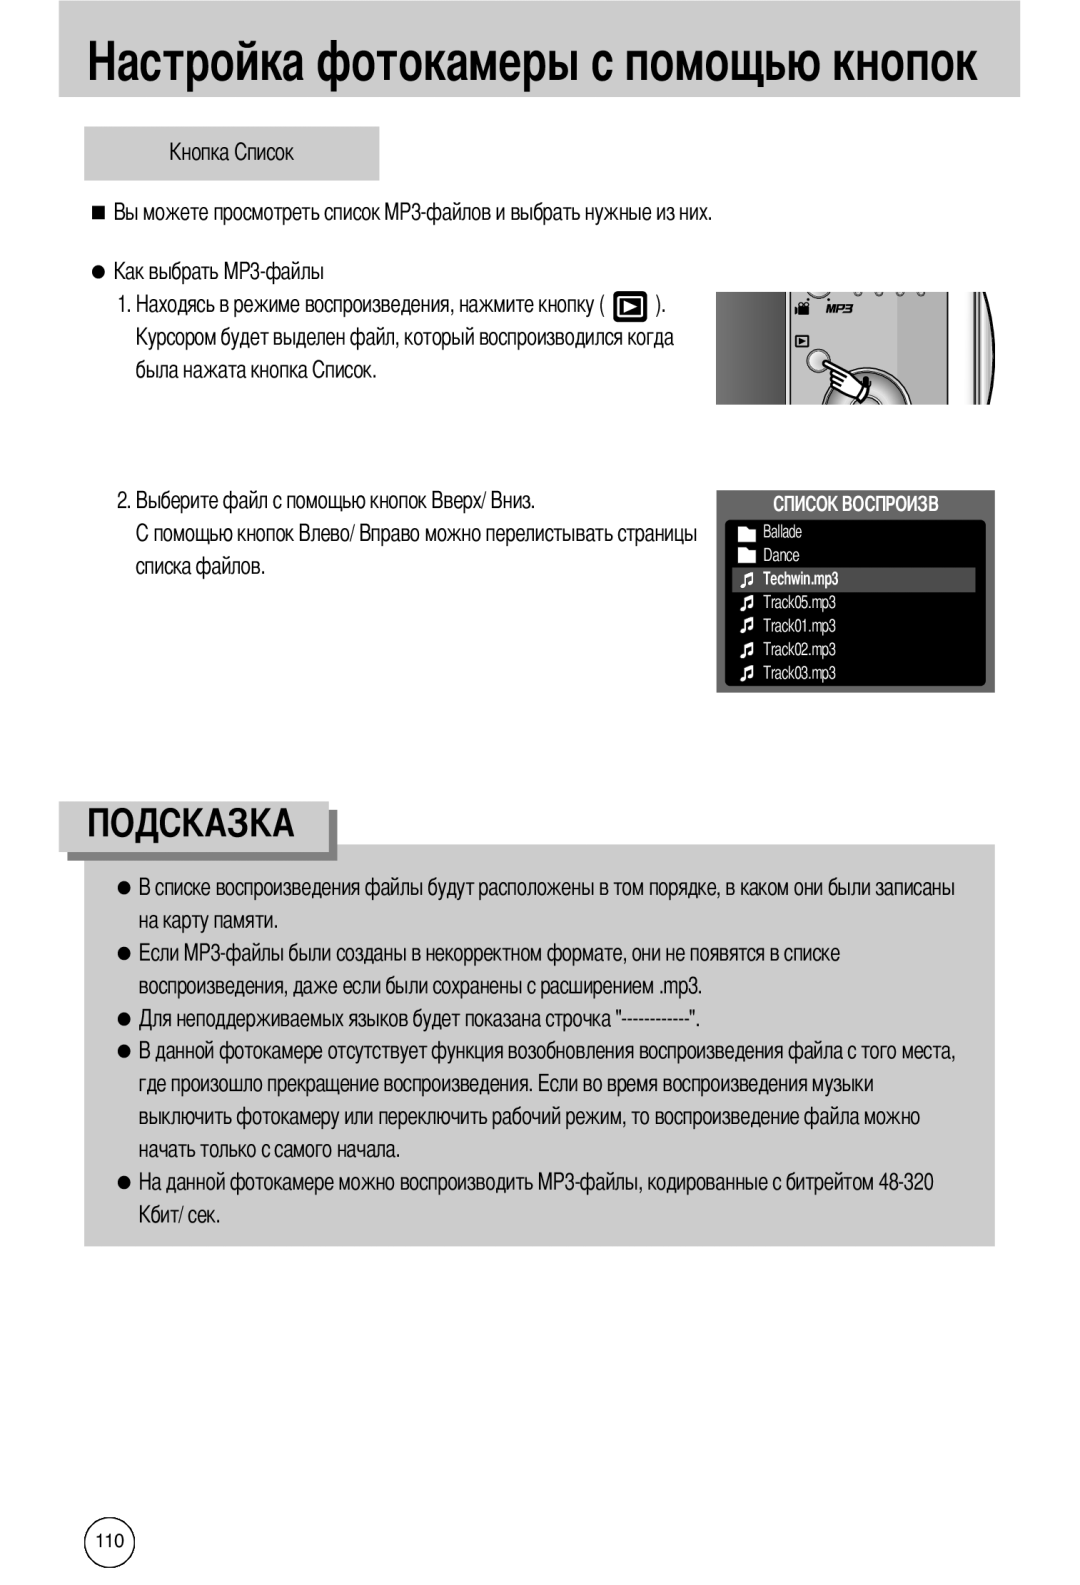 Samsung EC-I50ZZSBA/DE manual была нажата кнопка, списка файлов, на карту памяти, где произошло прекращение воспроизведения 